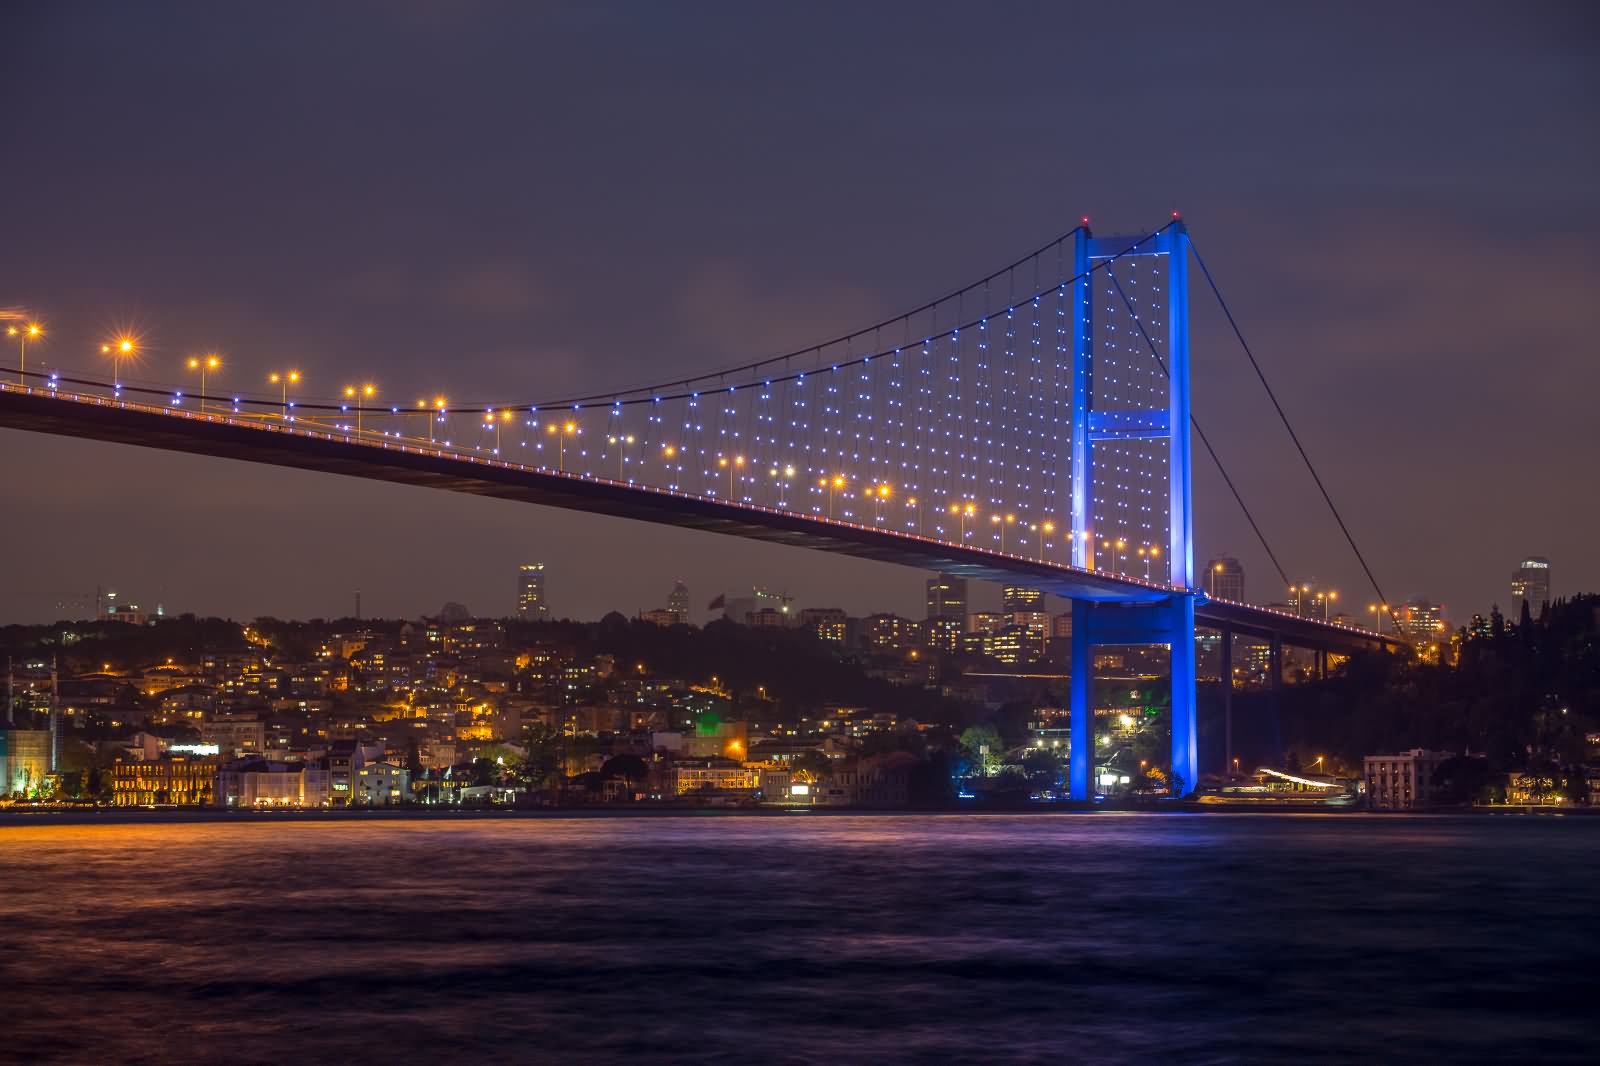 Beautiful Night Picture of The Bosphorus Bridge